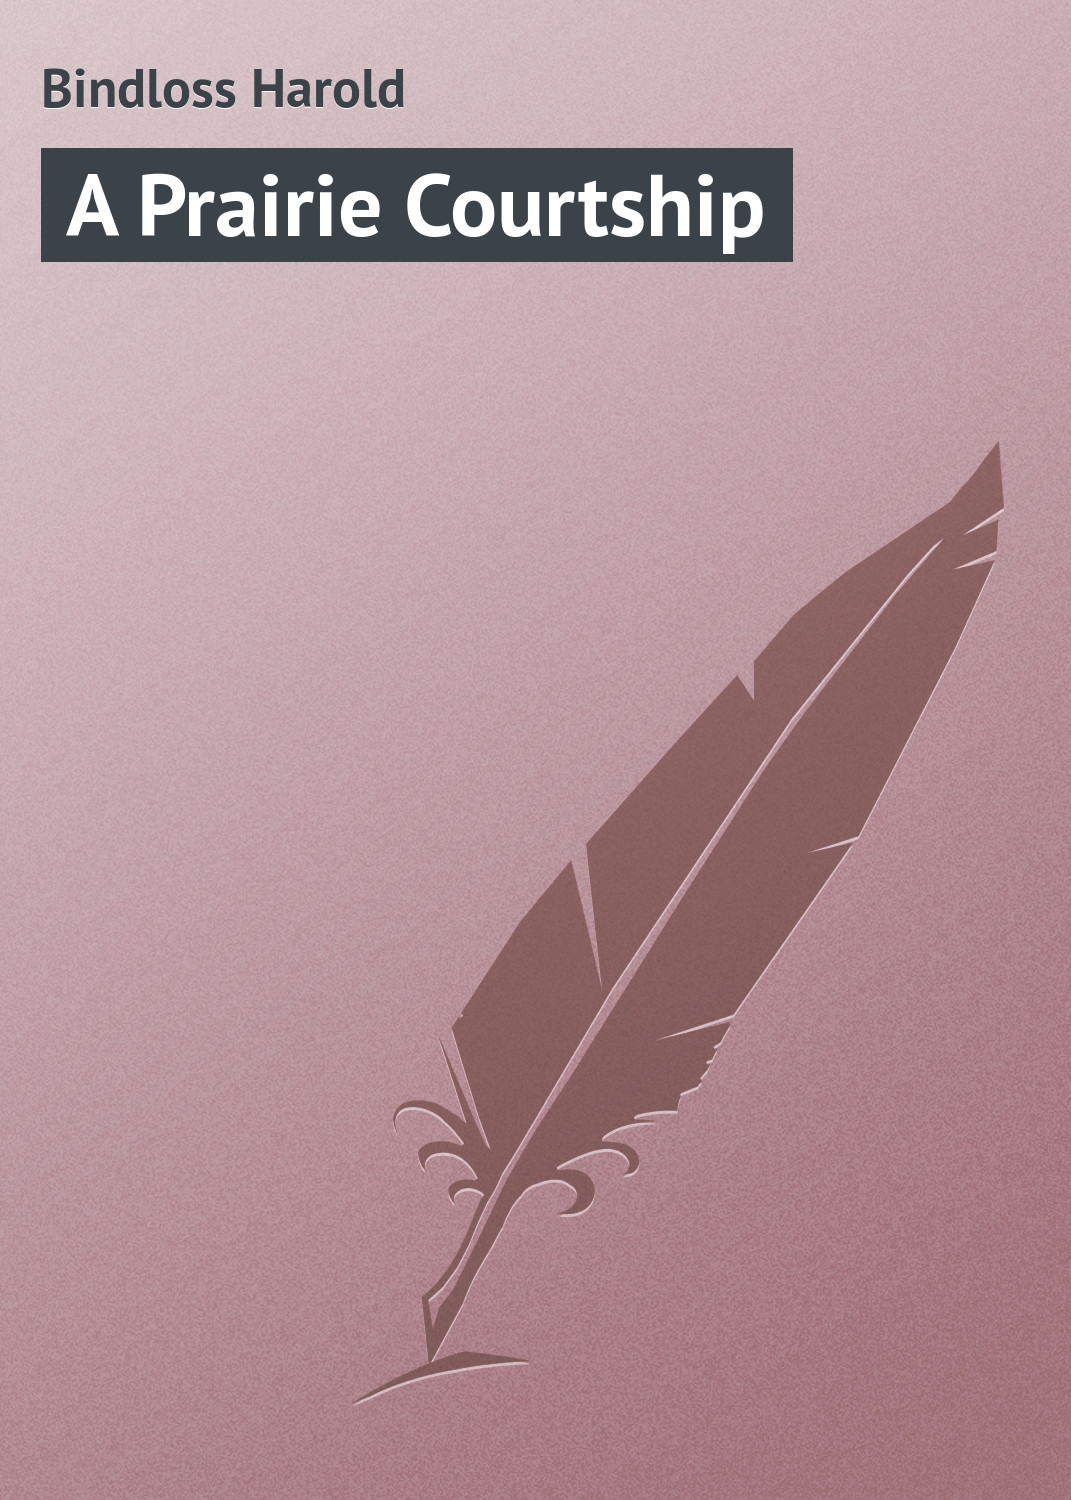 Книга A Prairie Courtship из серии , созданная Harold Bindloss, может относится к жанру Зарубежная классика. Стоимость электронной книги A Prairie Courtship с идентификатором 23157363 составляет 5.99 руб.